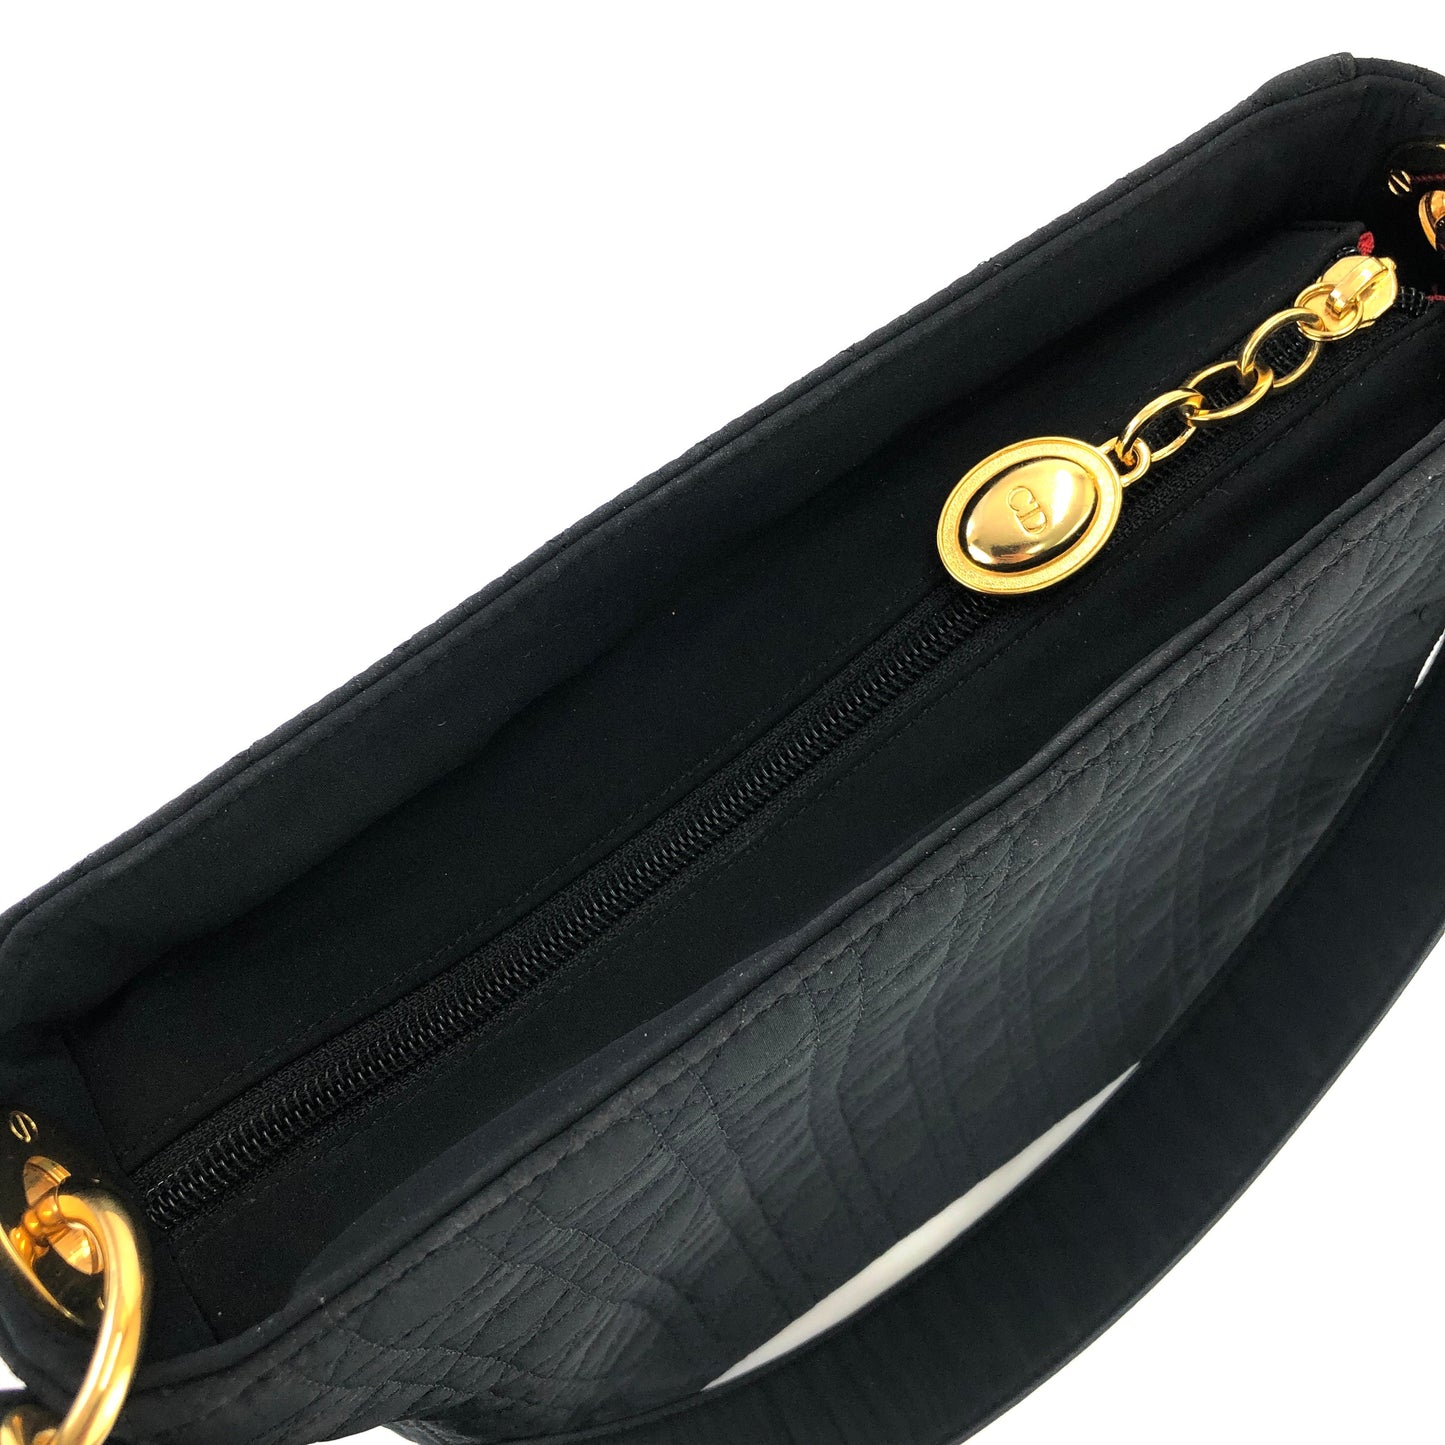 Christian Dior Cannage Lady dior Charm Nylon Shoulderbag Black 6bgtxu